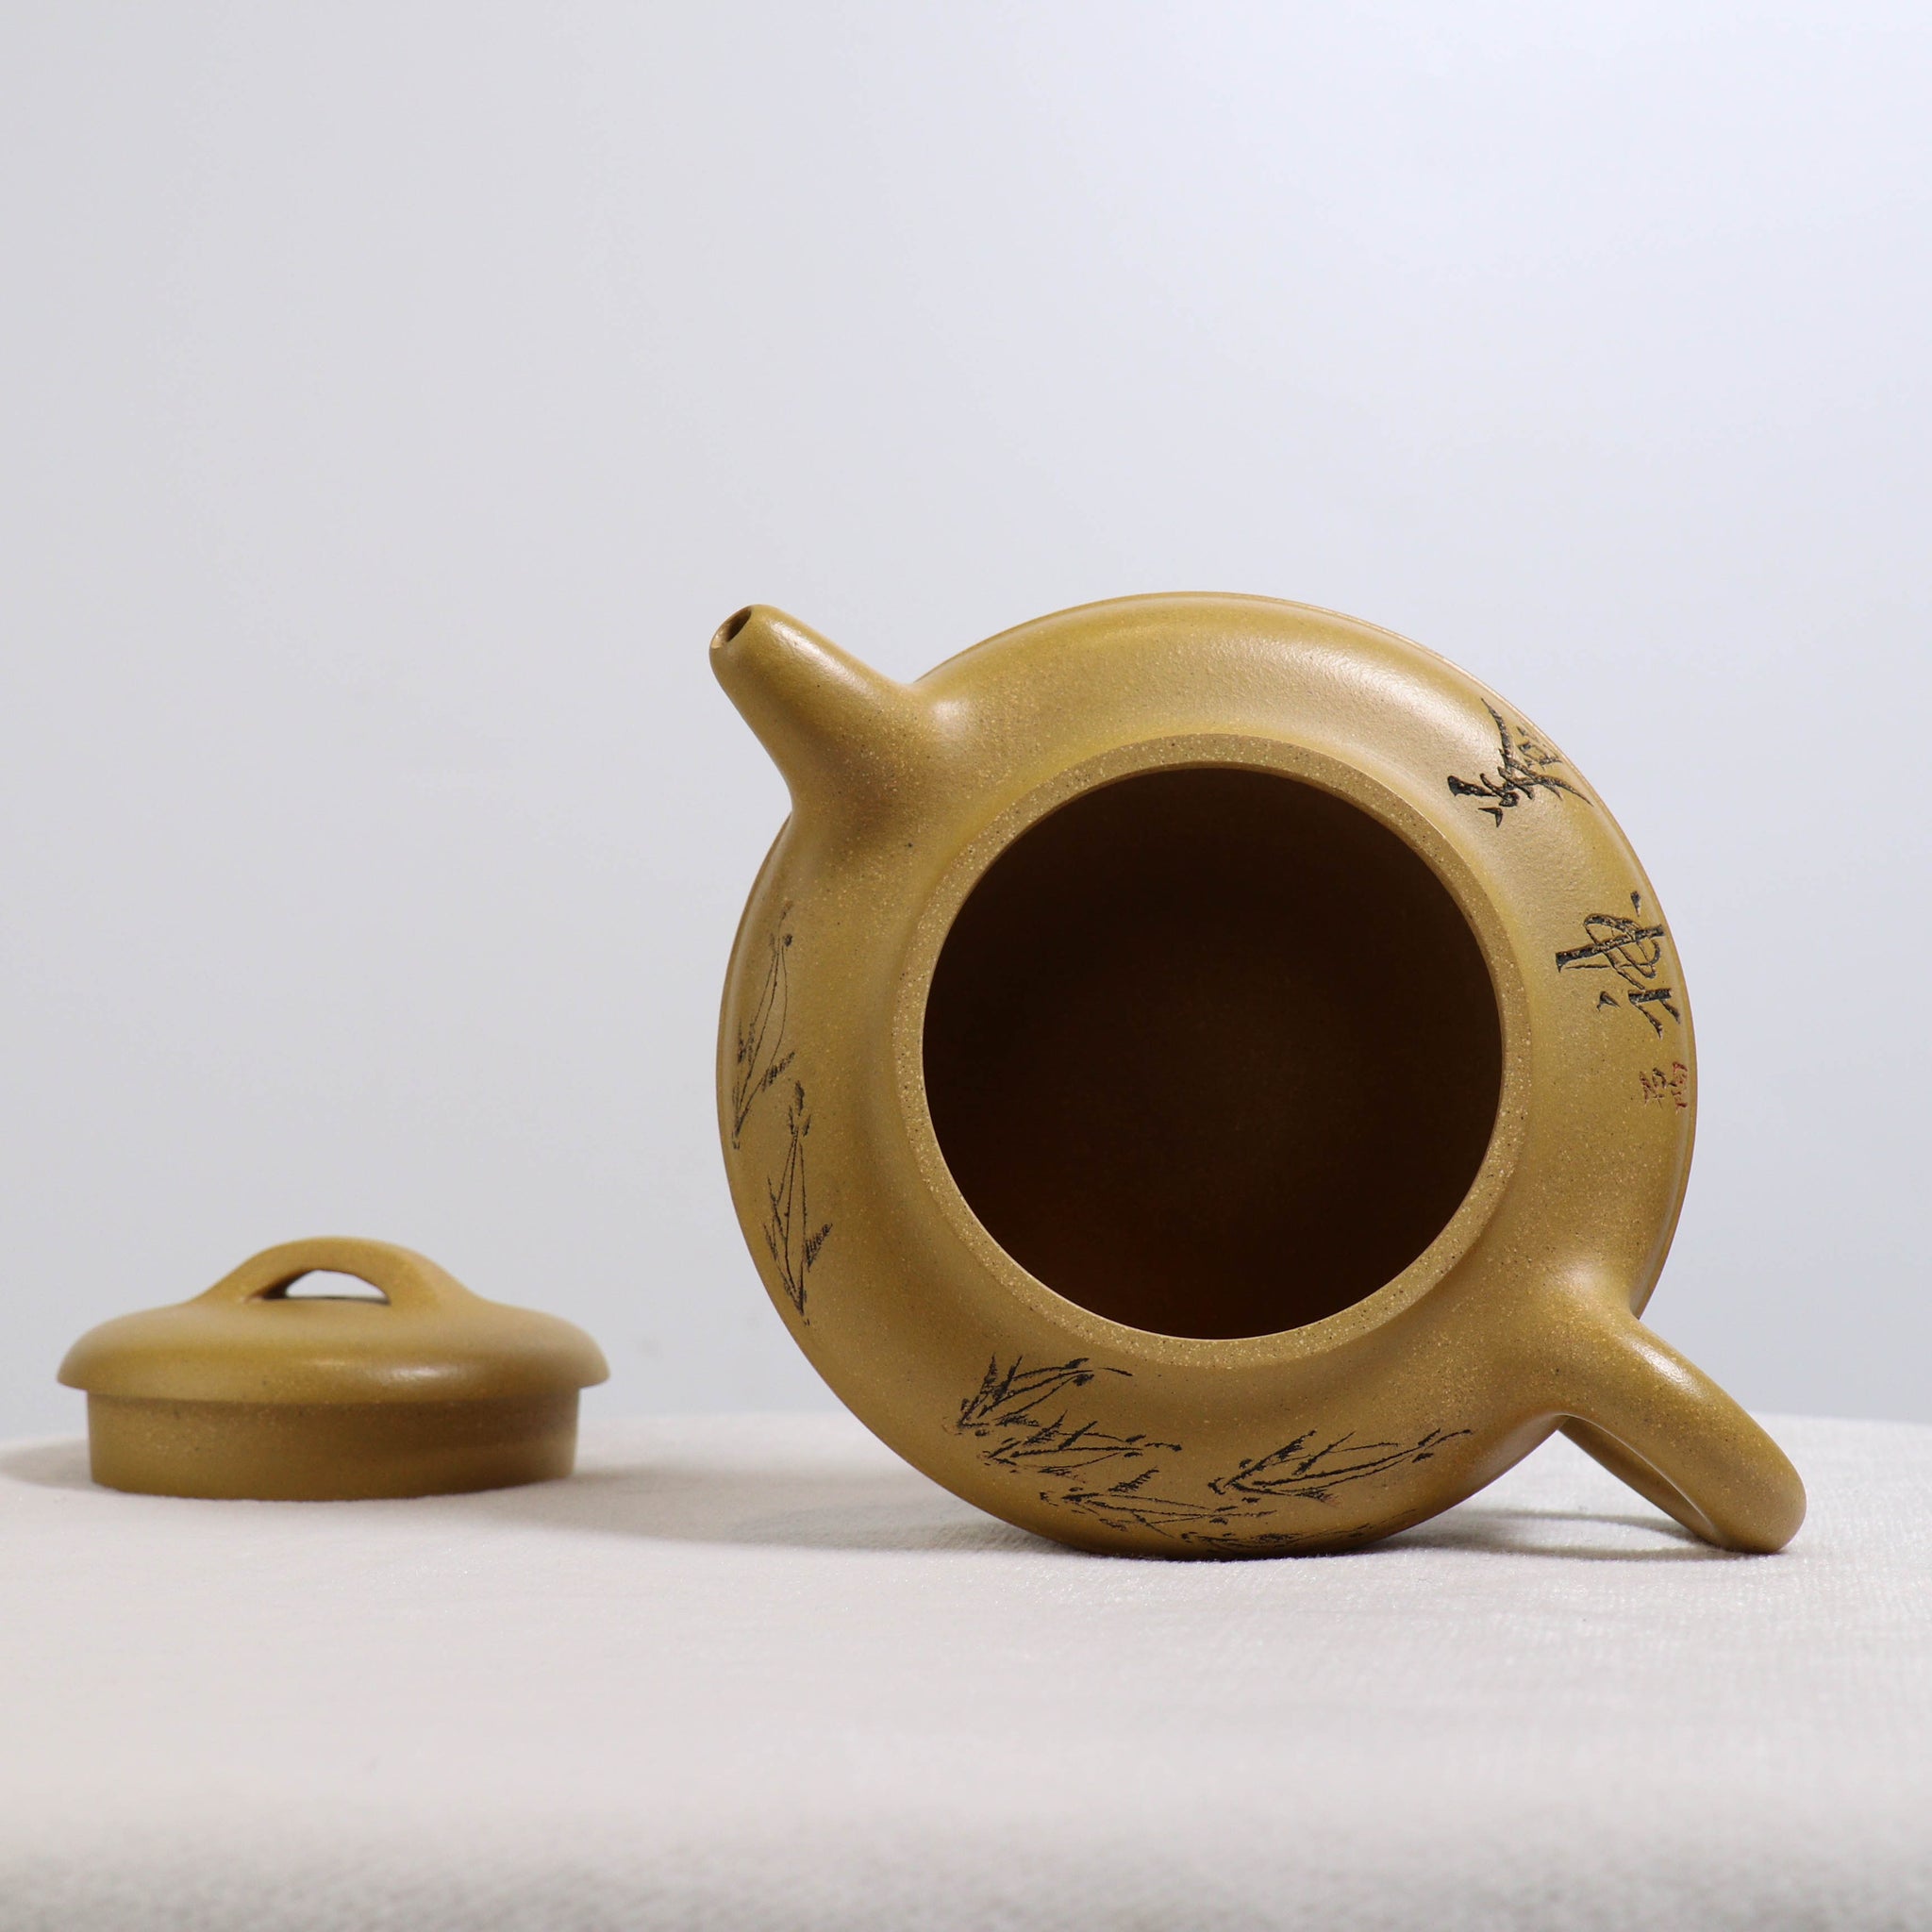 【線圓】黃段泥刻畫書法紫砂茶壺